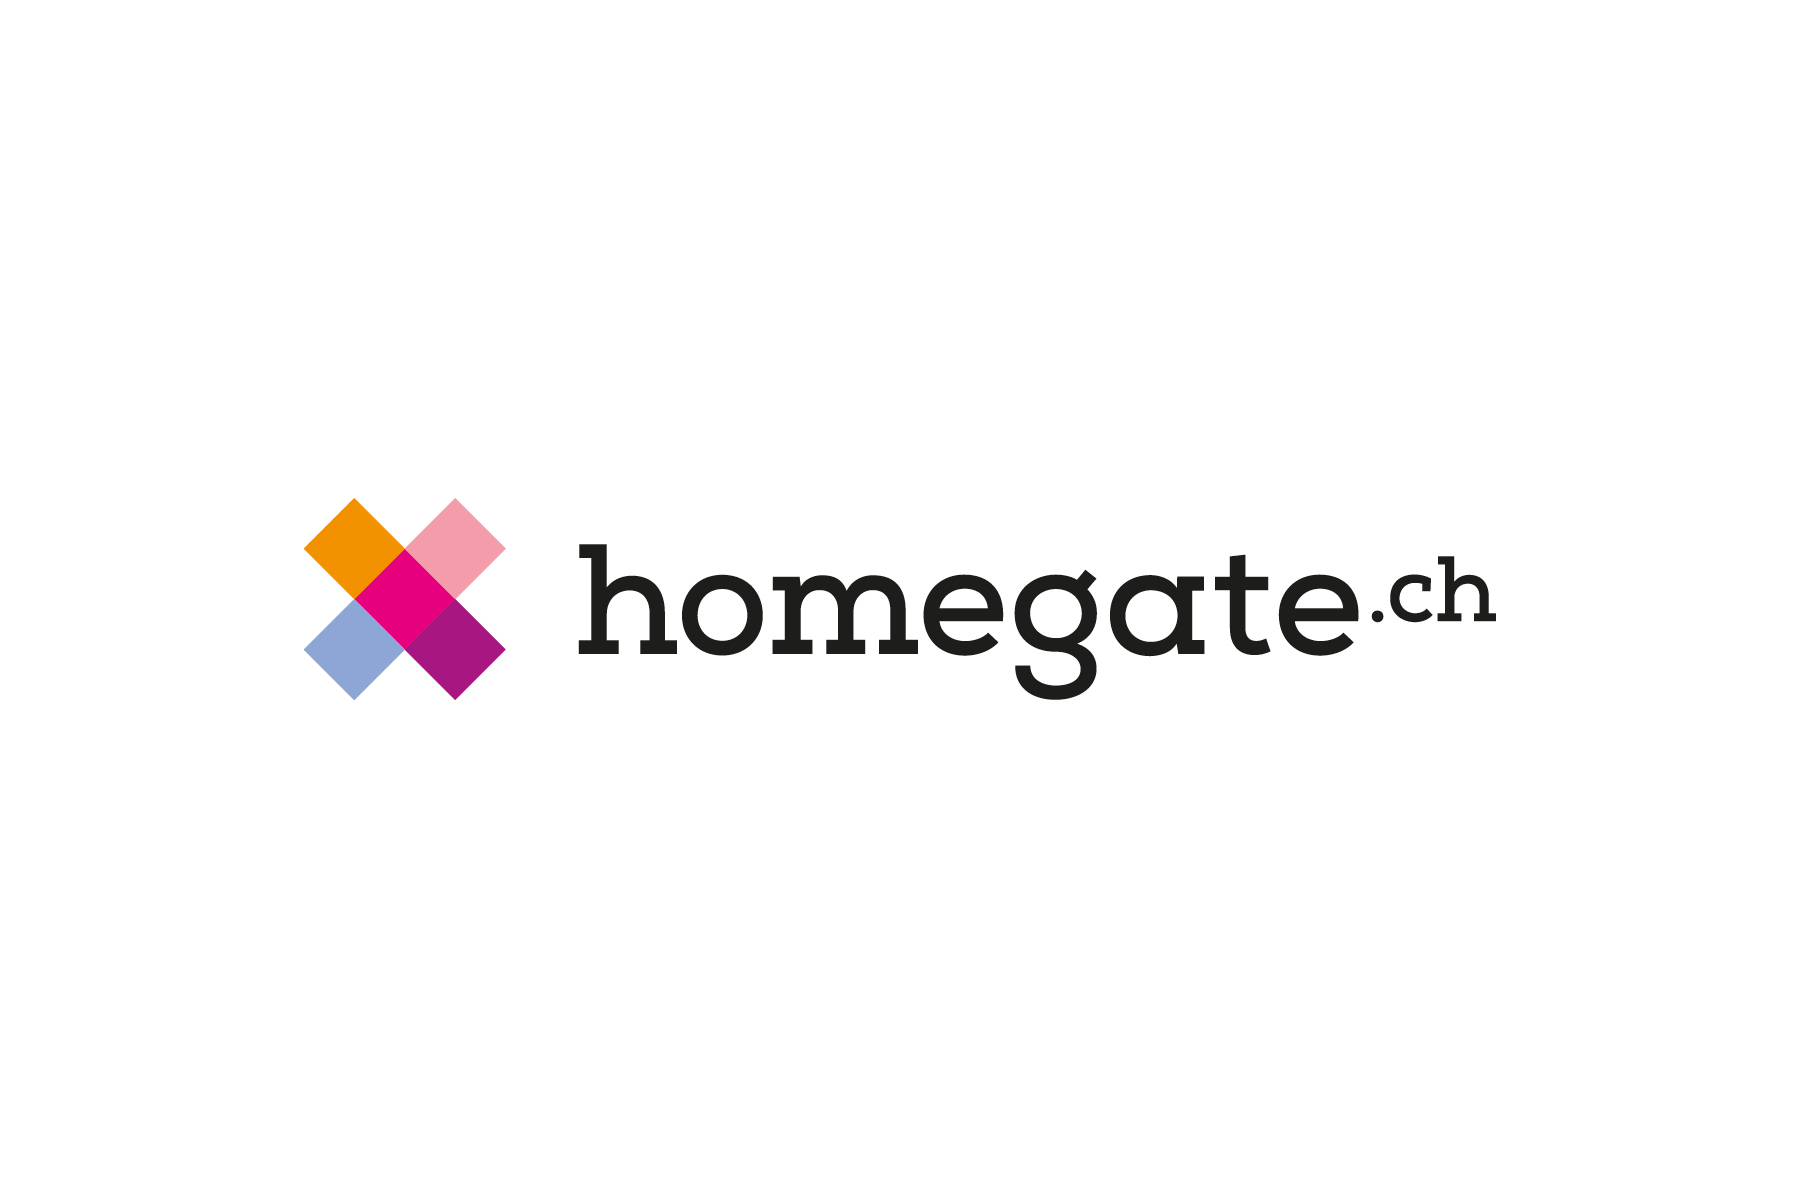 homegate_susannihlenfeld_logodesign-branding-1